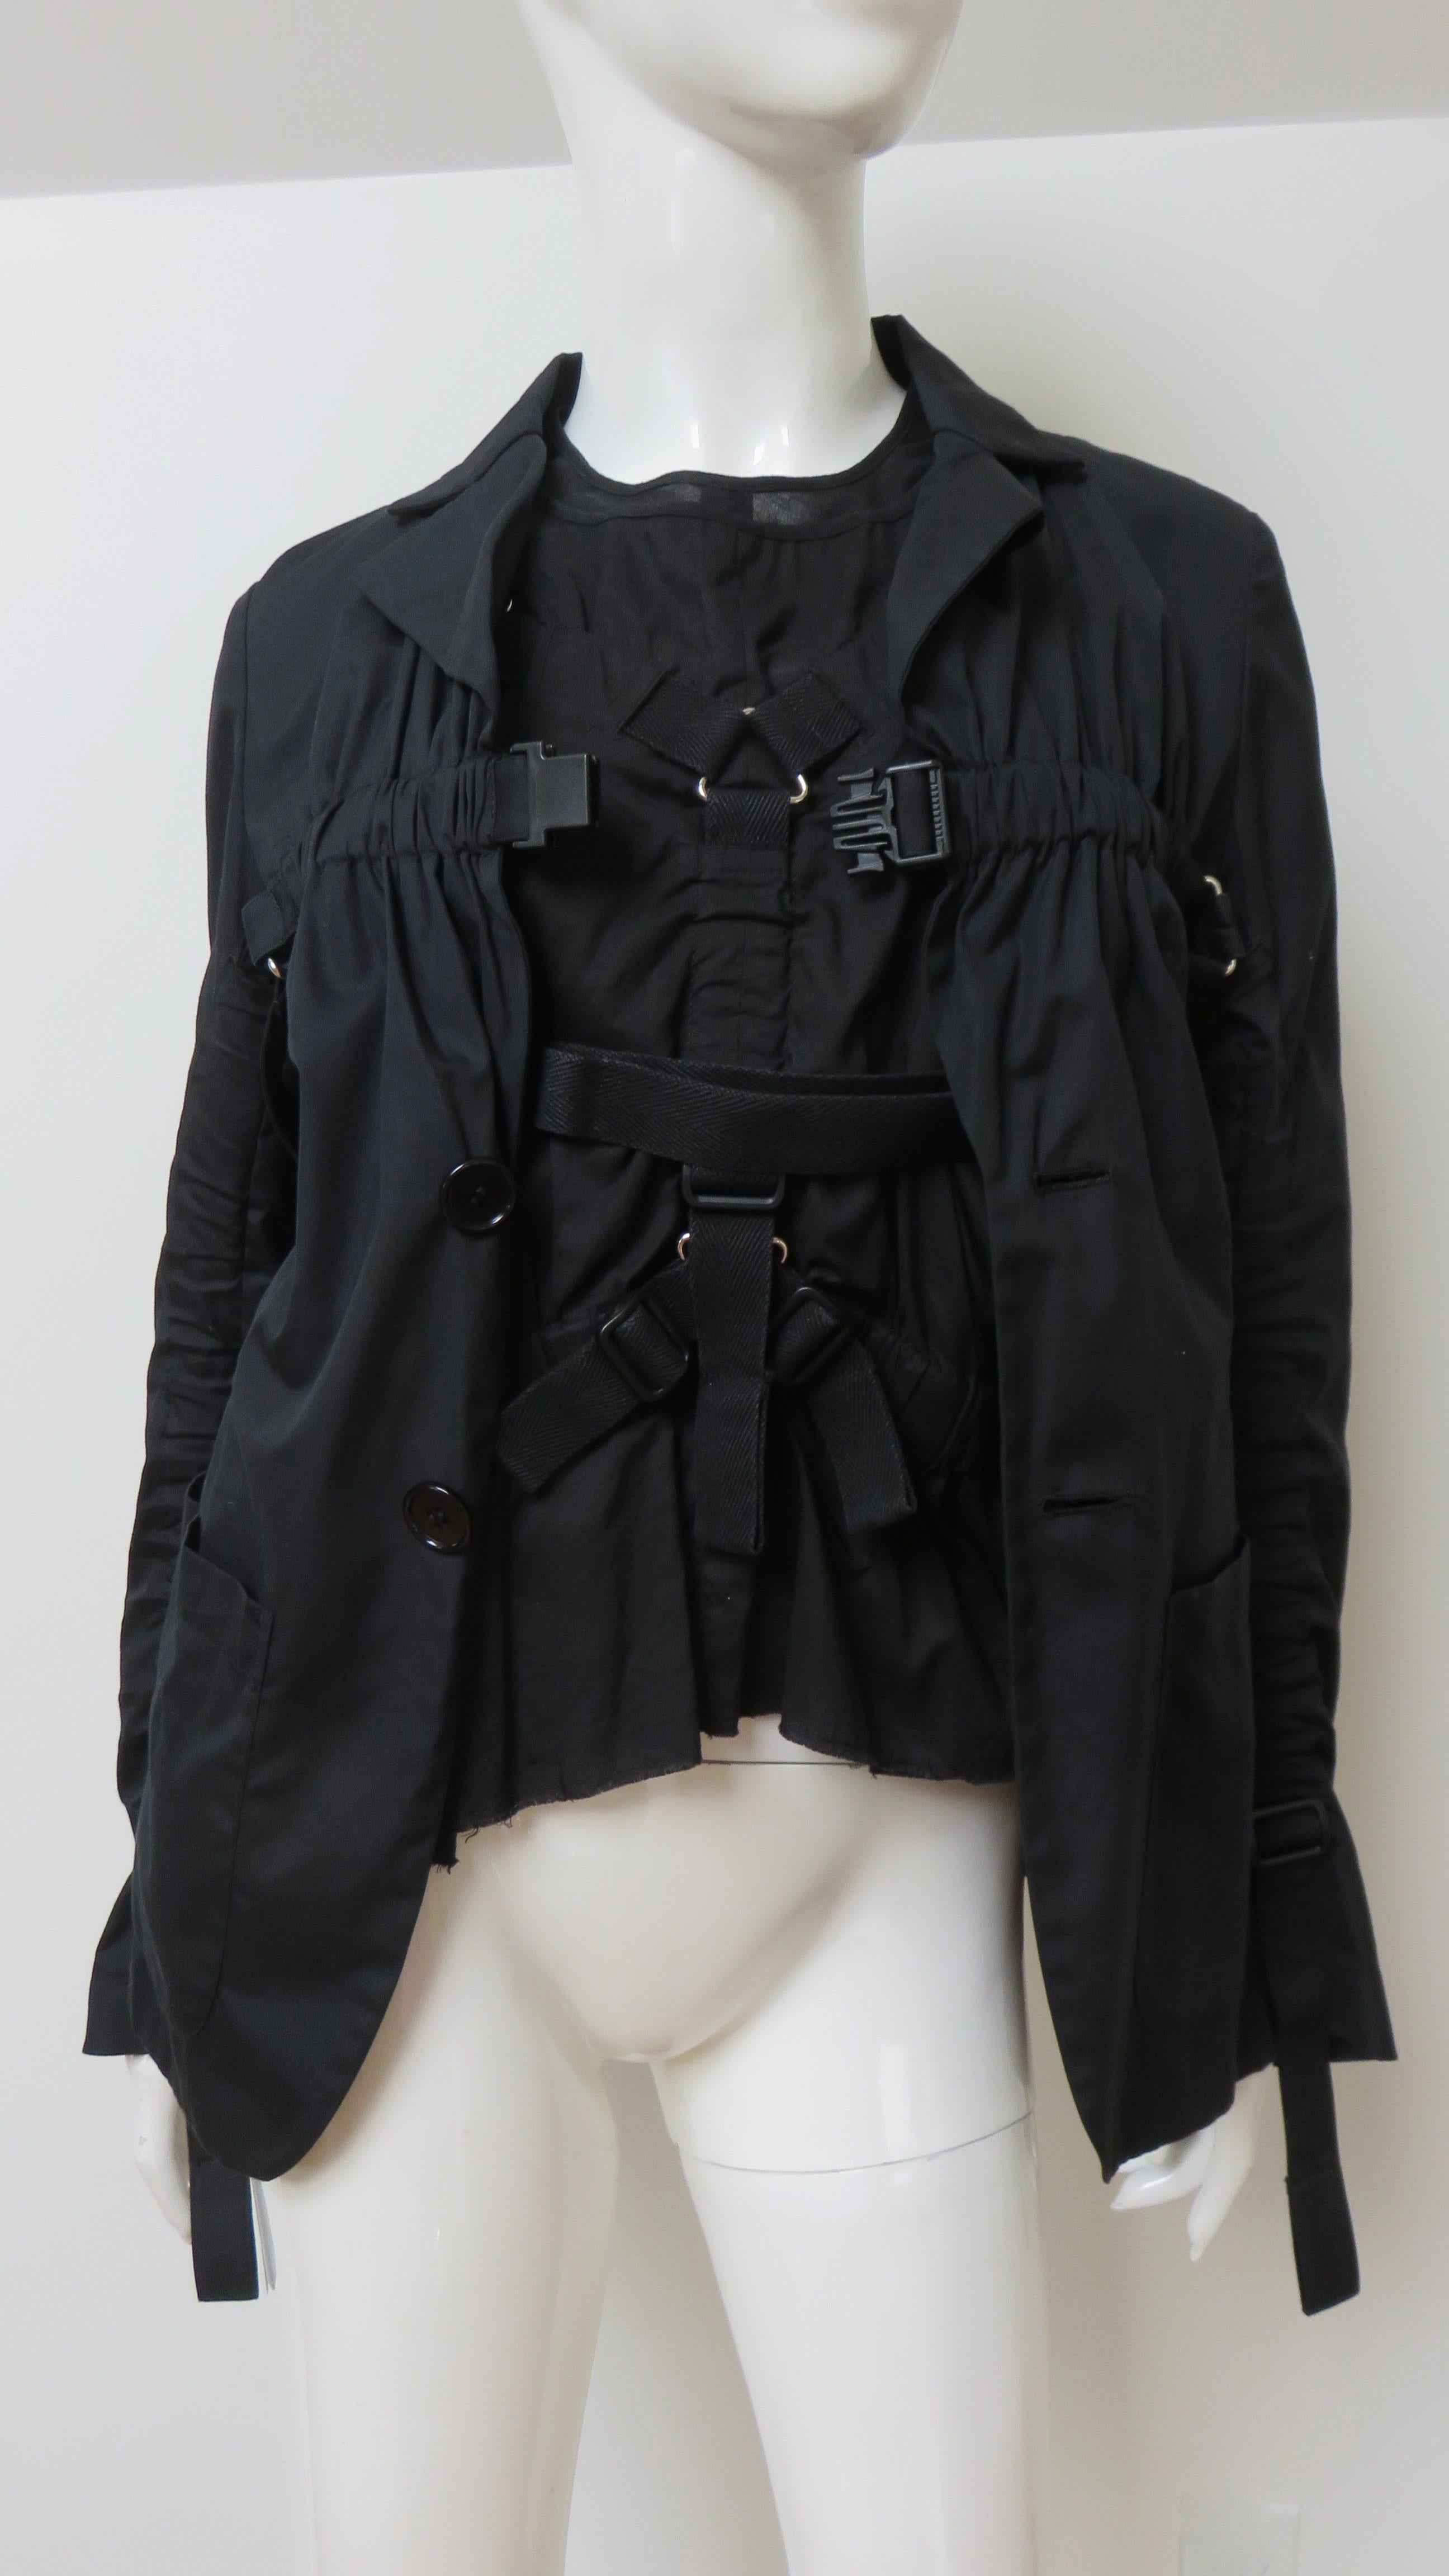 Un fabuleux ensemble 2 pièces en coton fin noir composé d'un haut sans manches et d'une veste assortie, signé Junya Watanabe pour Comme des Garcons. Le haut à manches a une encolure ras du cou et une configuration de bretelles réglables/mobiles avec